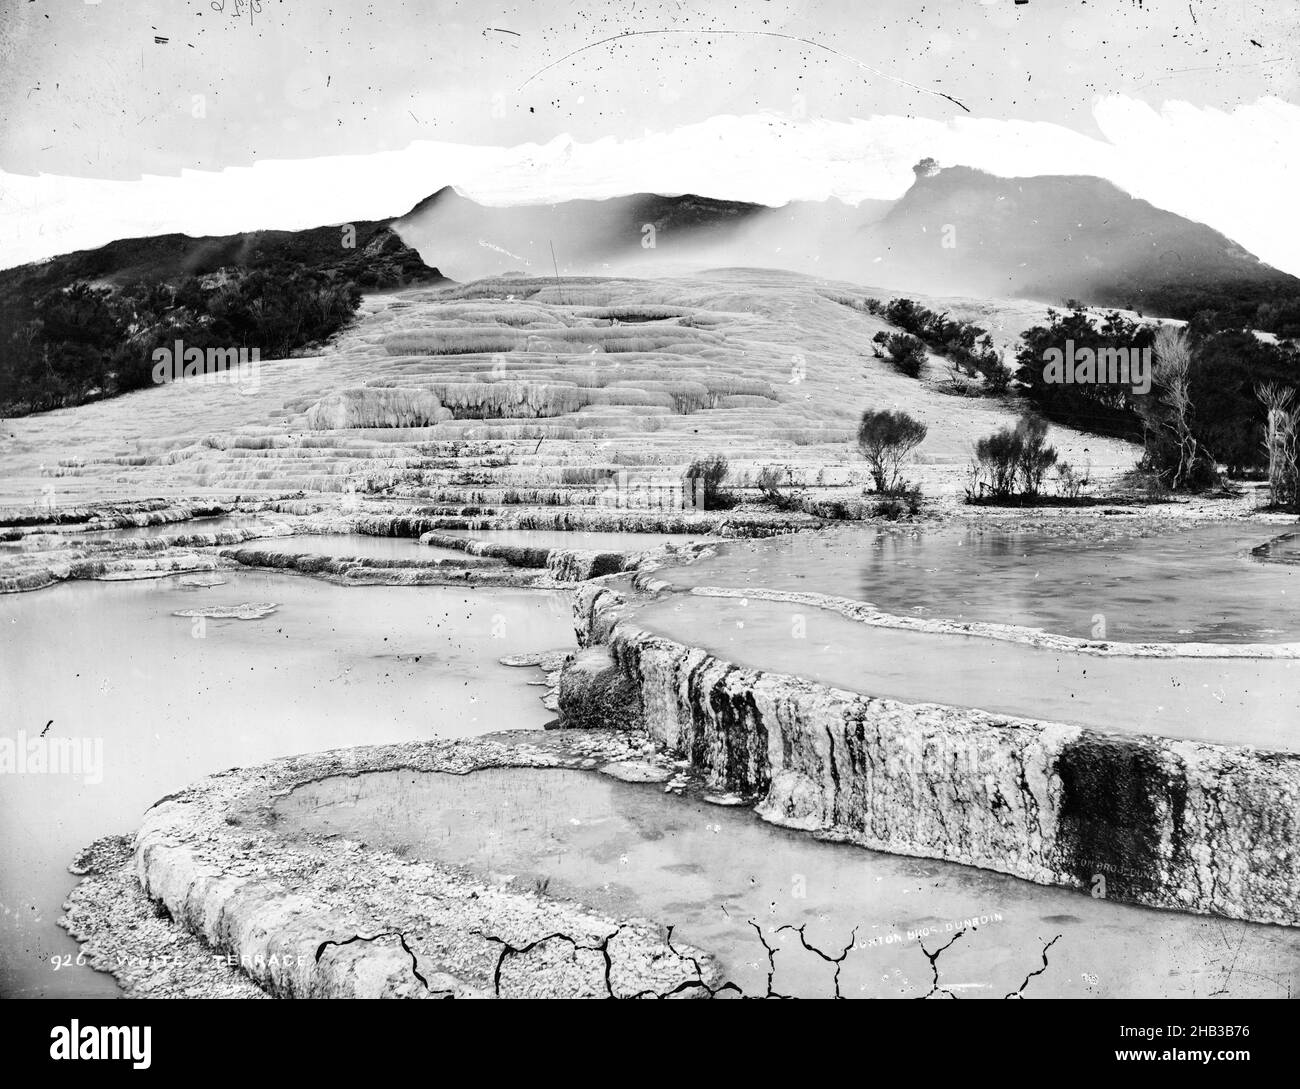 White Terrace, Burton Brothers Studio, Fotostudio, um 1885, Dunedin, Nasskollodion-Prozess, Blick auf die weißen Terrassen bei Rotomahana. Auf der Terrasse steigt Dampf auf Stockfoto